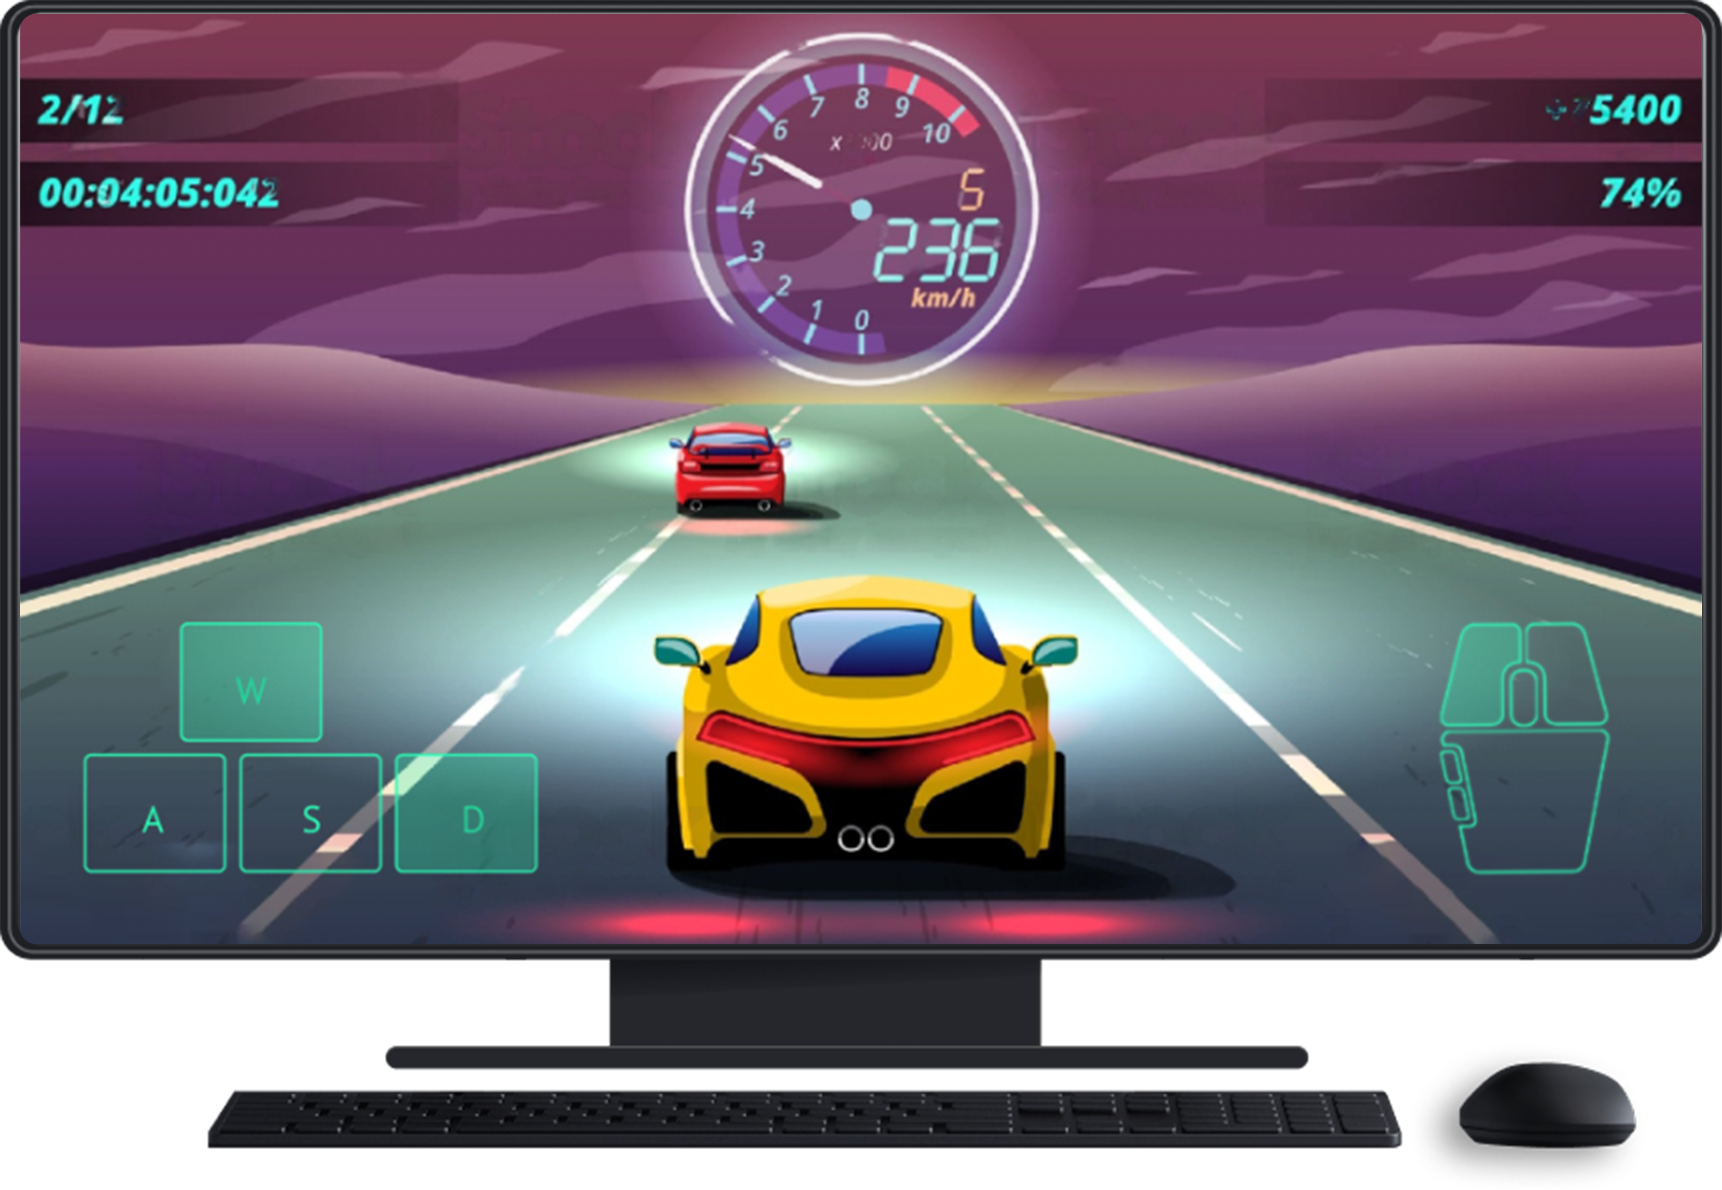 Computer desktop con tastiera e mouse. Il gioco è sullo schermo e mostra gli input del touchscreen per il controllo della direzione e il mouse.